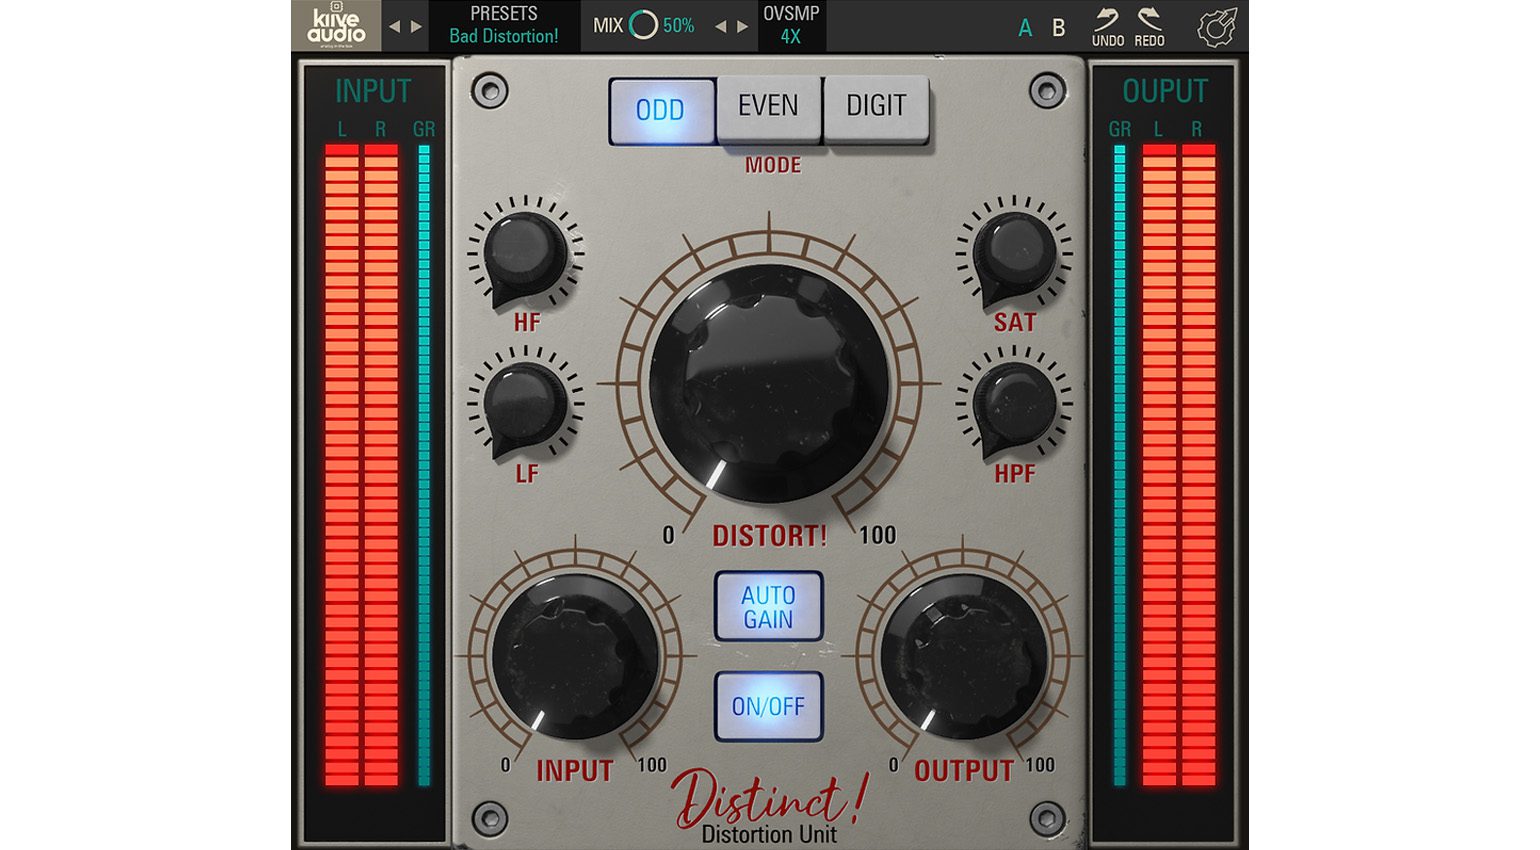 Kiive Audio veröffentlicht S-Quick Strip und Distinct! Plug-in-Emulationen